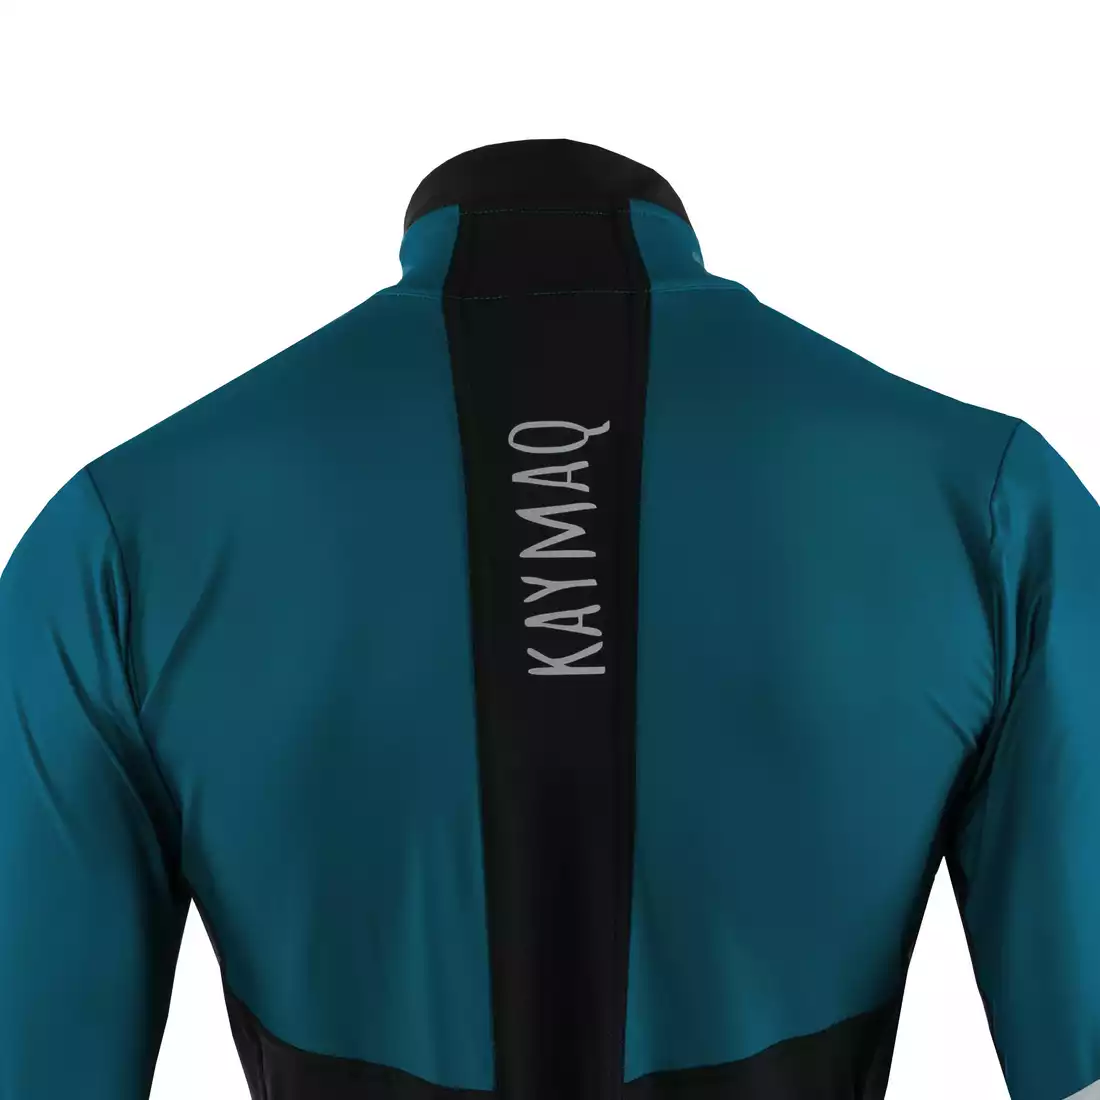 KAYMAQ KYQLS-001 męska bluza rowerowa niebiesko-czarna